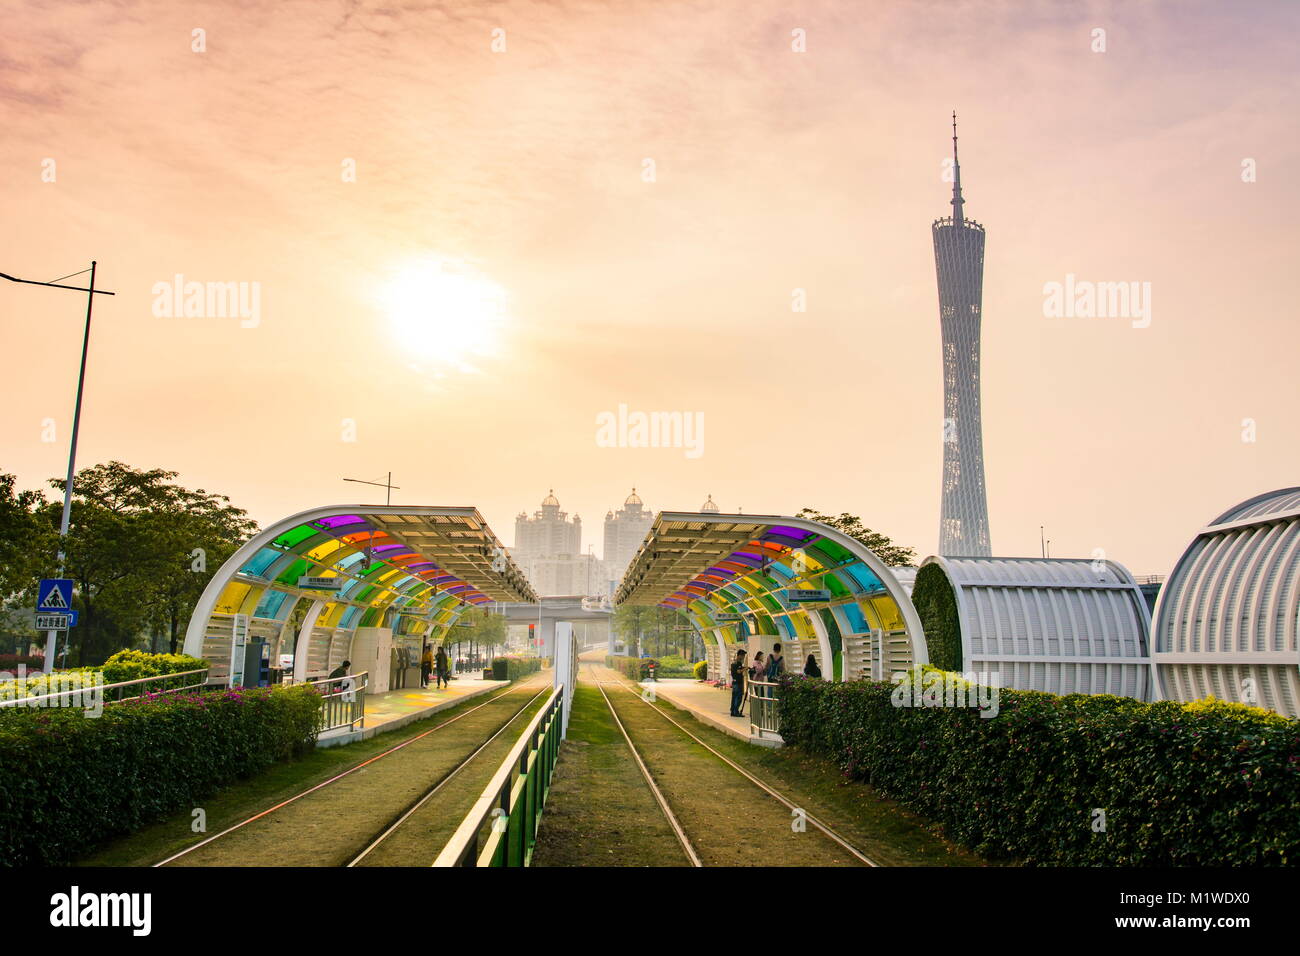 GUANGZHOU, China - 3. JANUAR 2018: Guangzhou City Tram Station mit Gras Rail Track abgedeckt und Canton Tower im Hintergrund Stockfoto